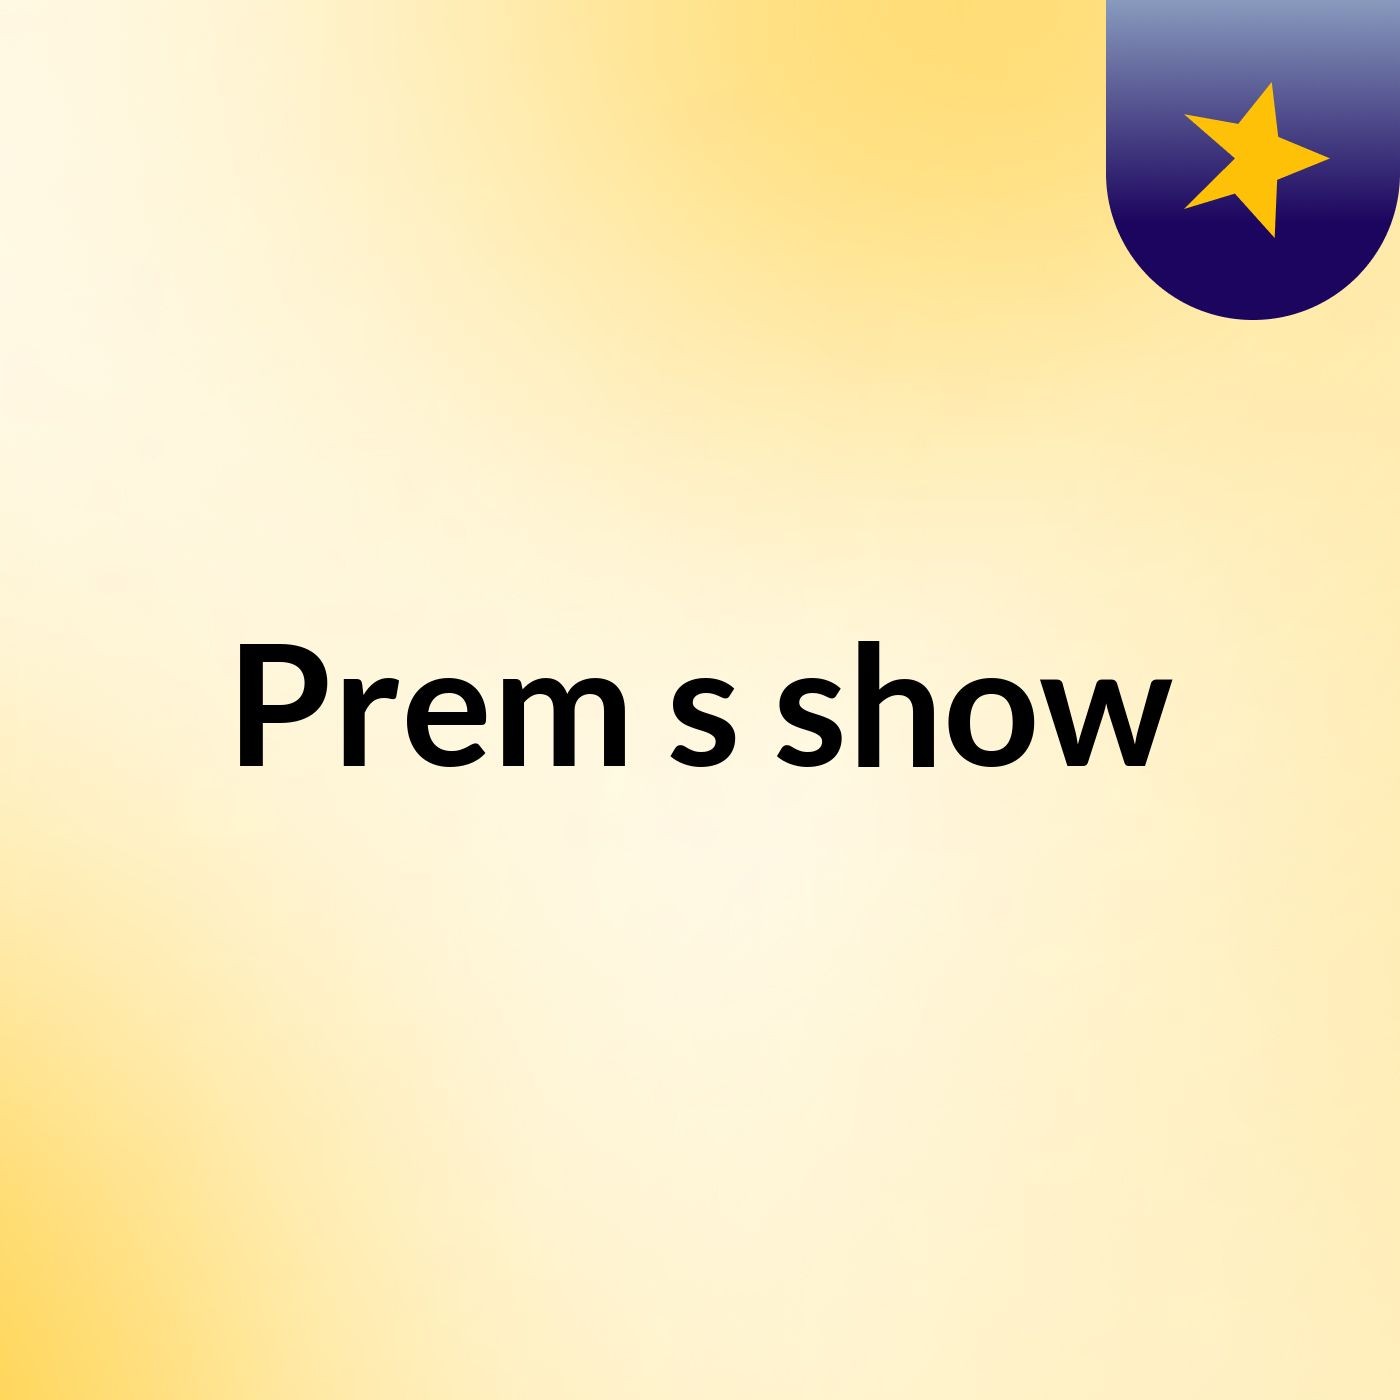 Prem's show